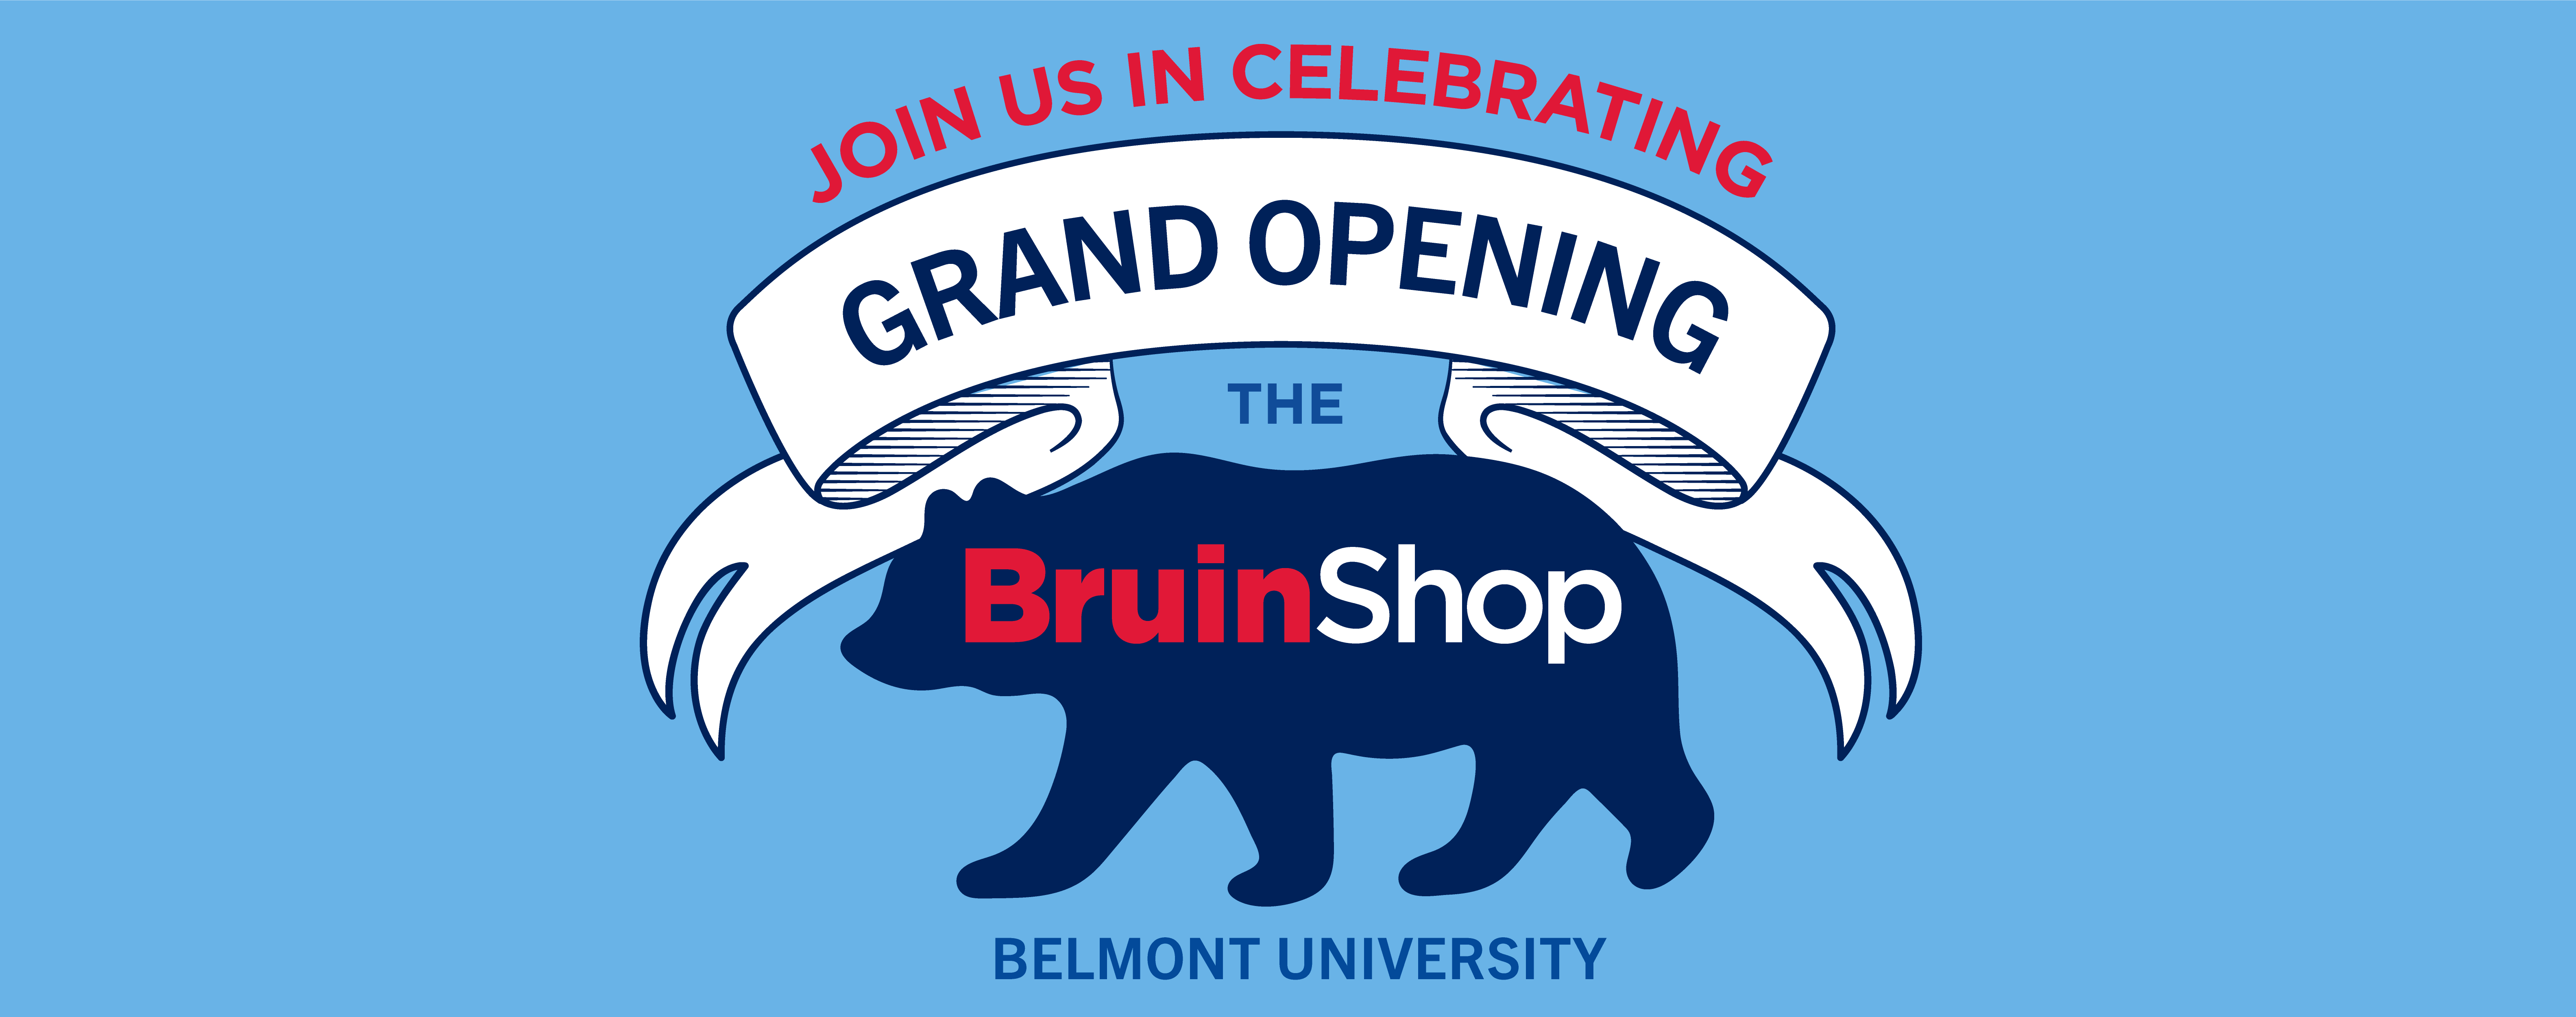 BruinShop Grand Opening